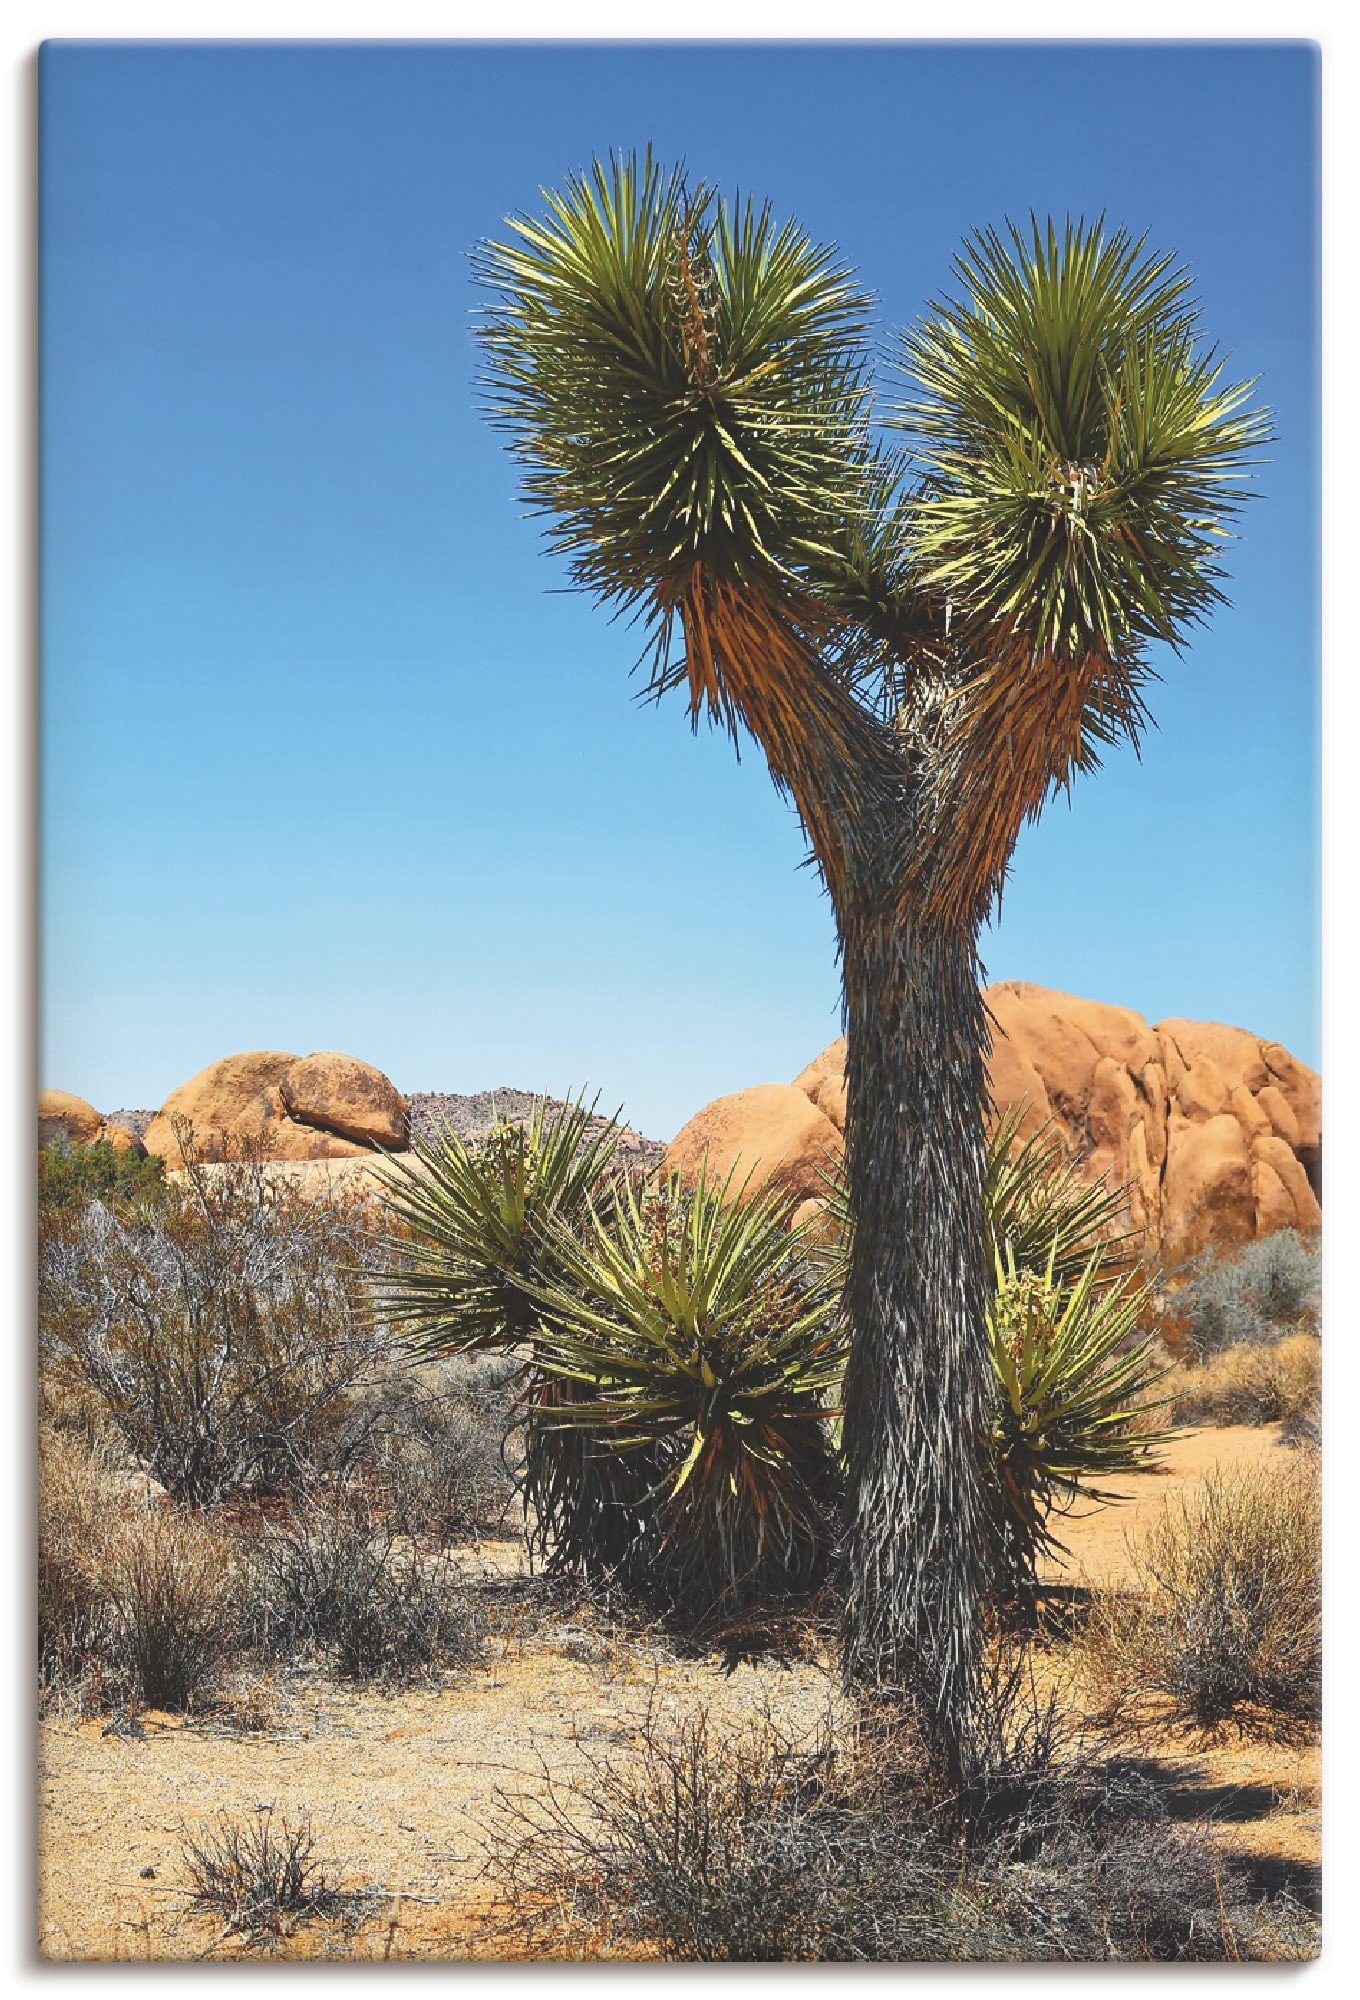 Artland Artprint Joshua Tree in de Mojave woestijn II in vele afmetingen & productsoorten - artprint van aluminium / artprint voor buiten, artprint op linnen, poster, muursticker /